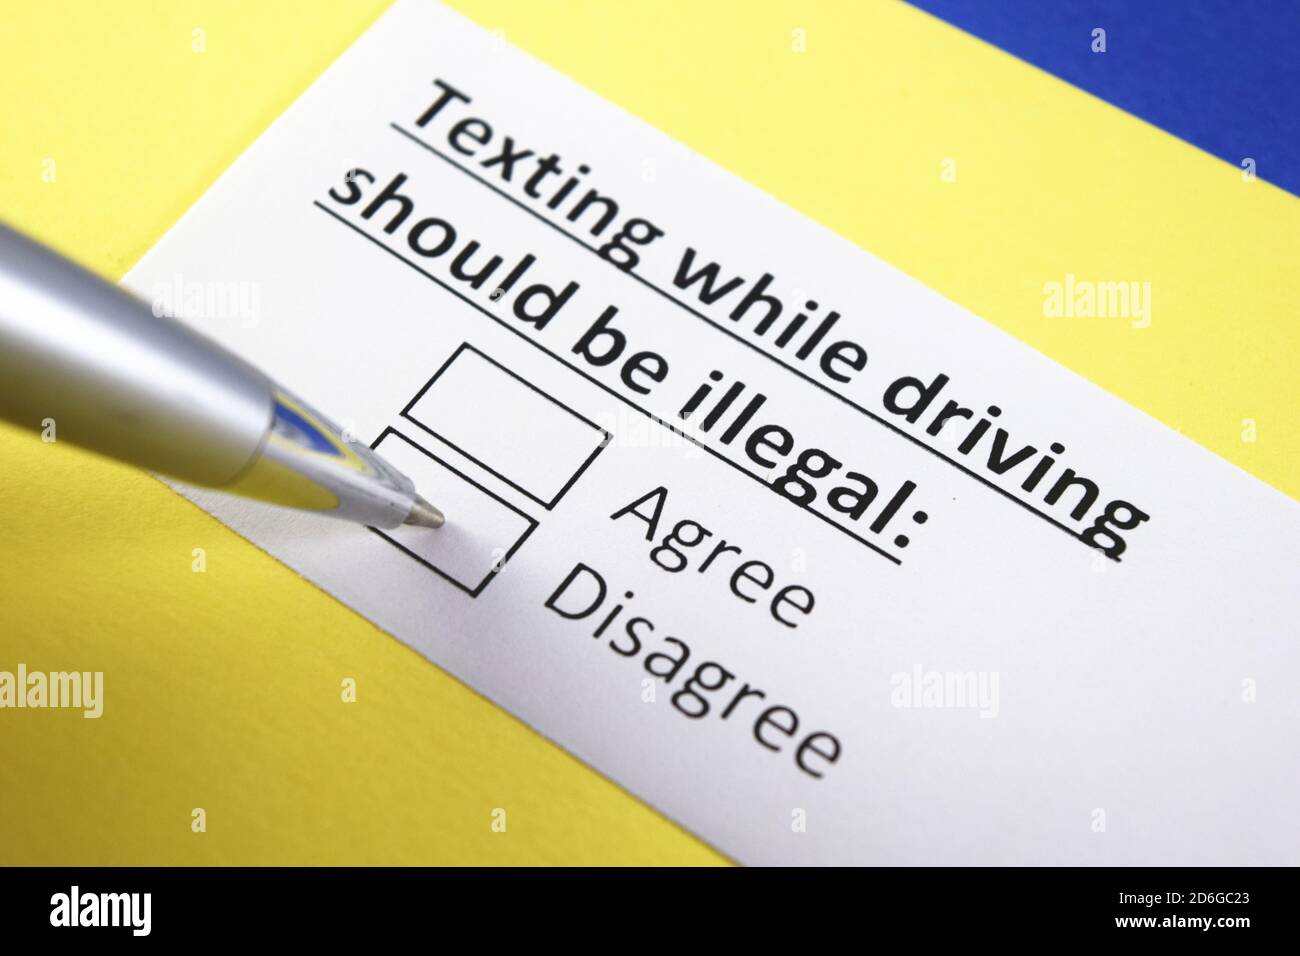 SMS während der Fahrt sollte illegal sein: Stimmen Sie zu oder stimmen Sie nicht zu? Stockfoto